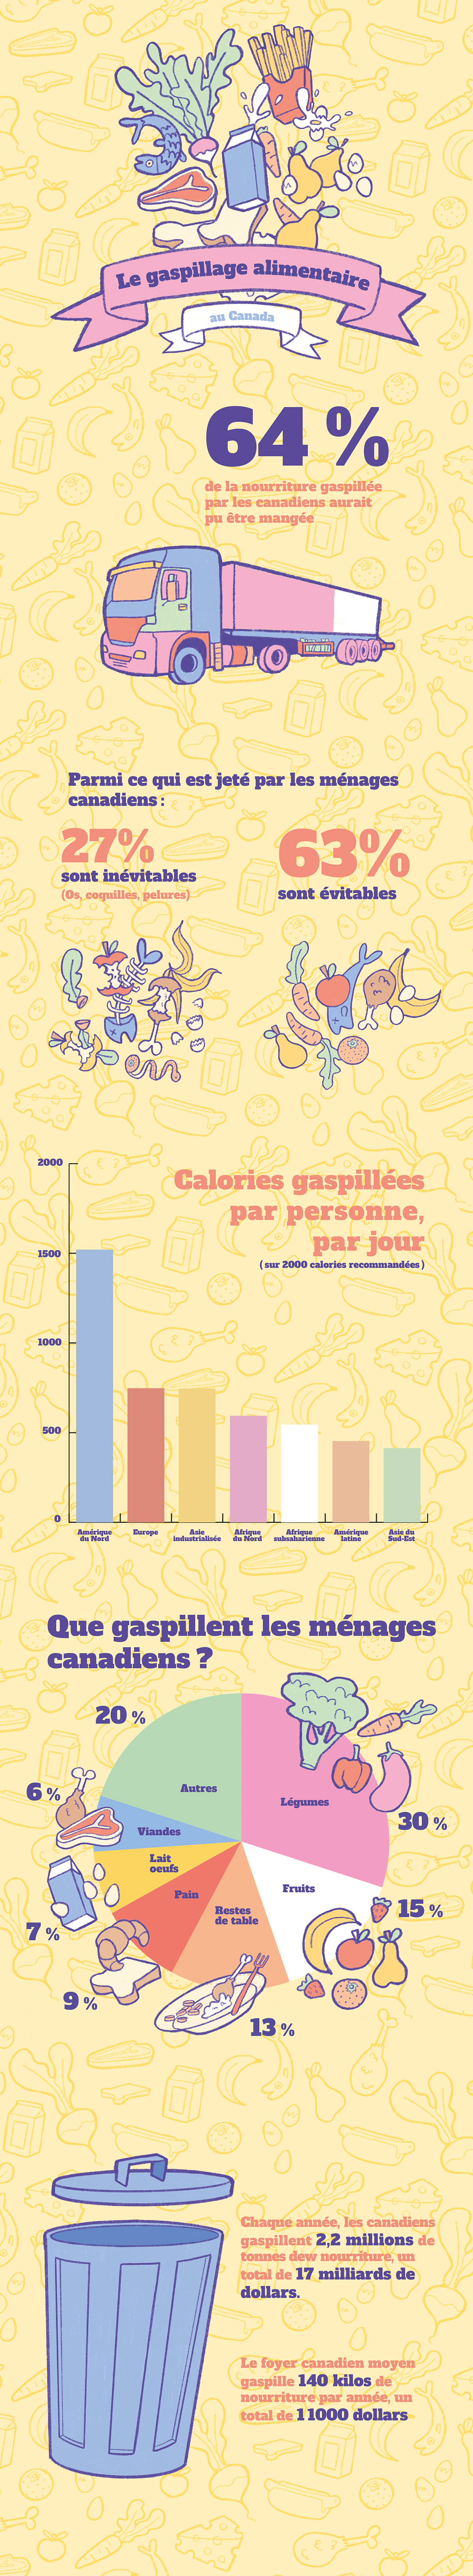 Présentation de statistiques sur le gaspillage alimentaire au Canada à l'aide de graphiques